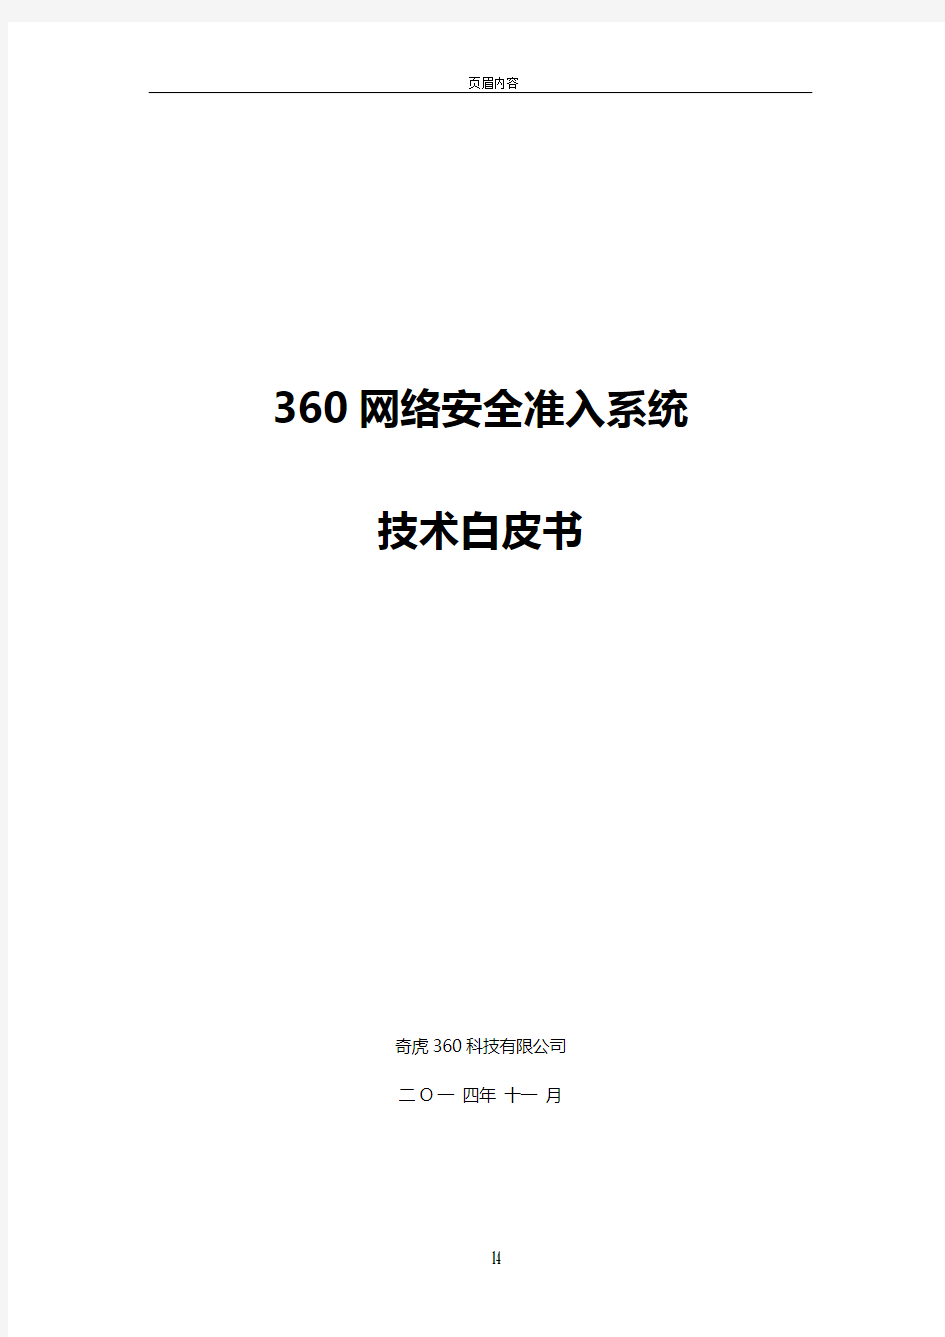 360网络安全准入系统技术白皮书-V1.3